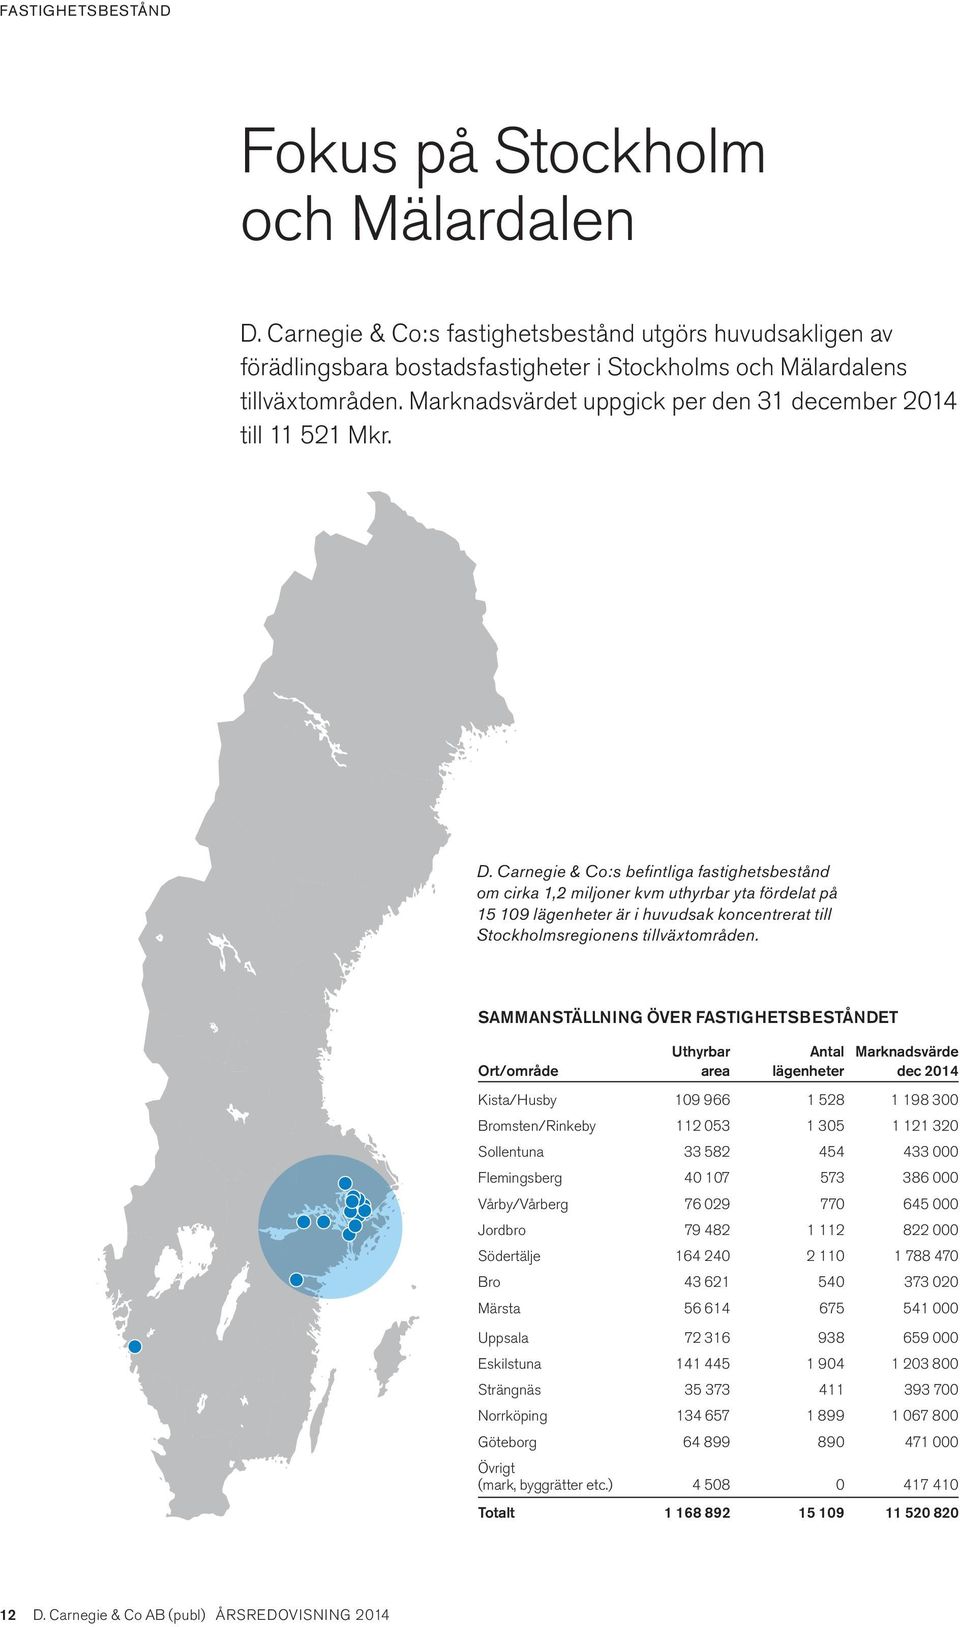 Carnegie & Co:s befintliga fastighetsbestånd om cirka 1,2 miljoner kvm uthyrbar yta fördelat på 15 109 lägenheter är i huvudsak koncentrerat till Stockholmsregionens tillväxtområden.